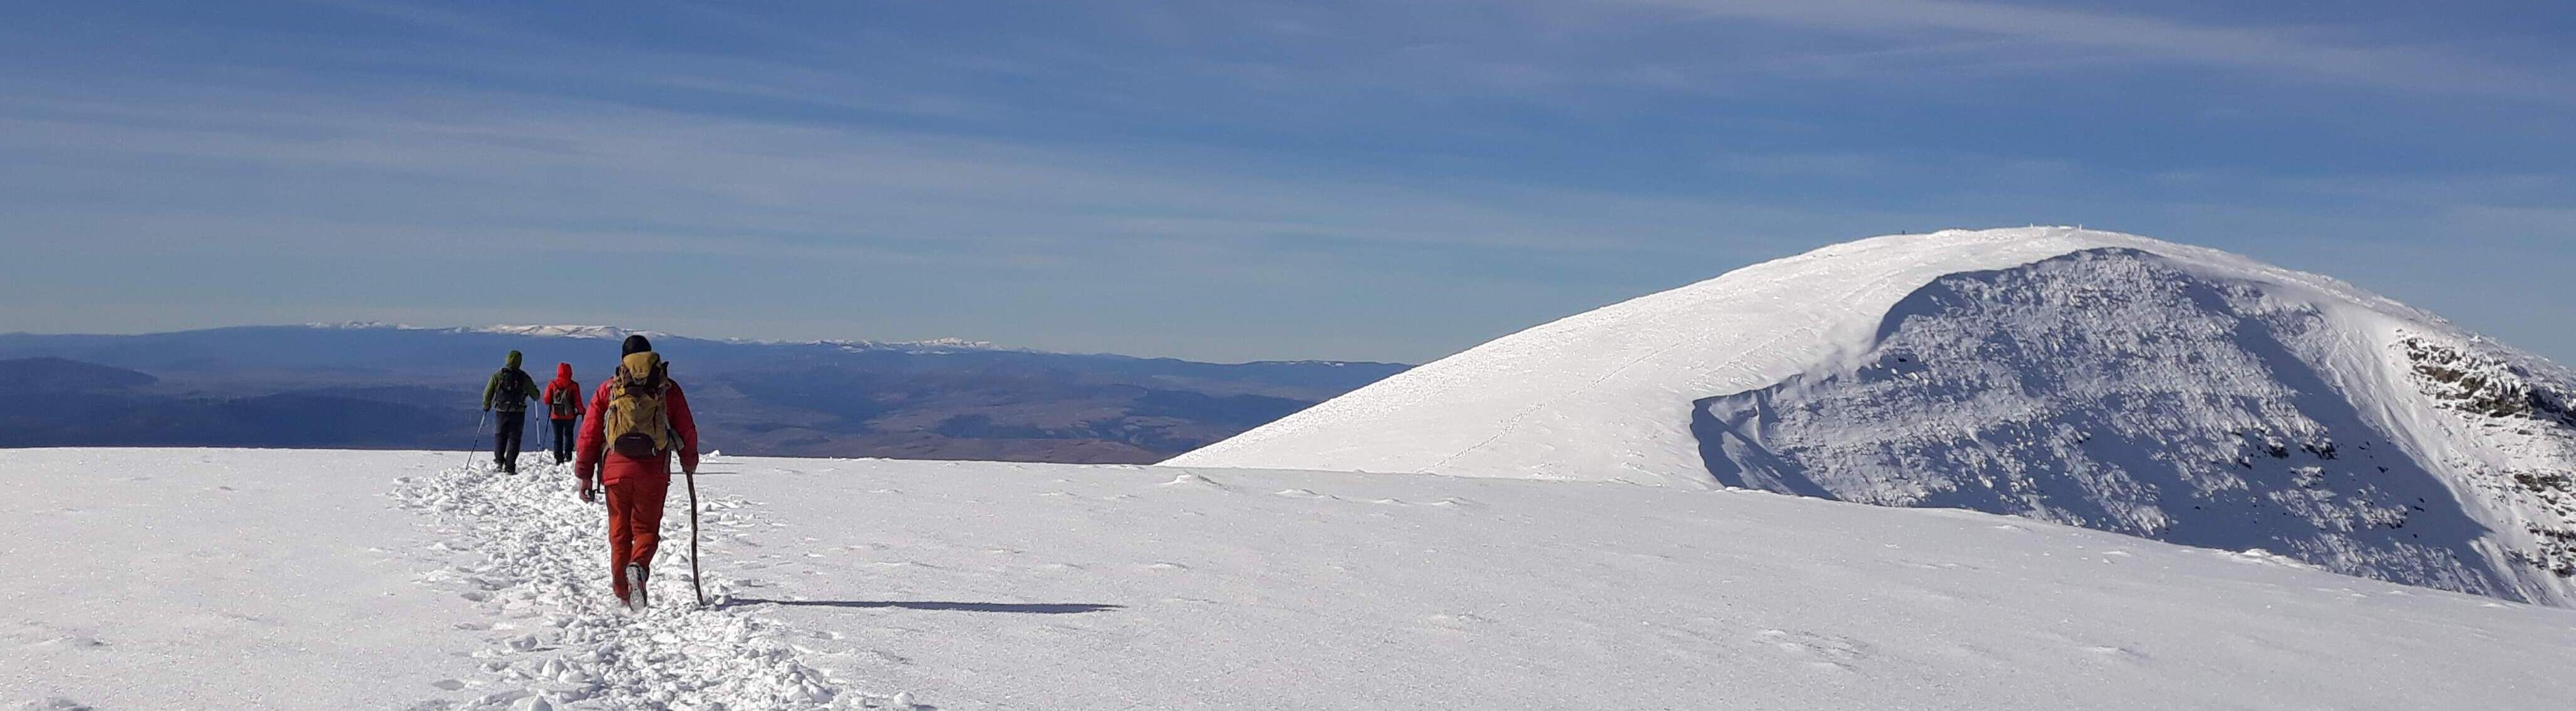 Foto de personas caminando en una montaña nevada